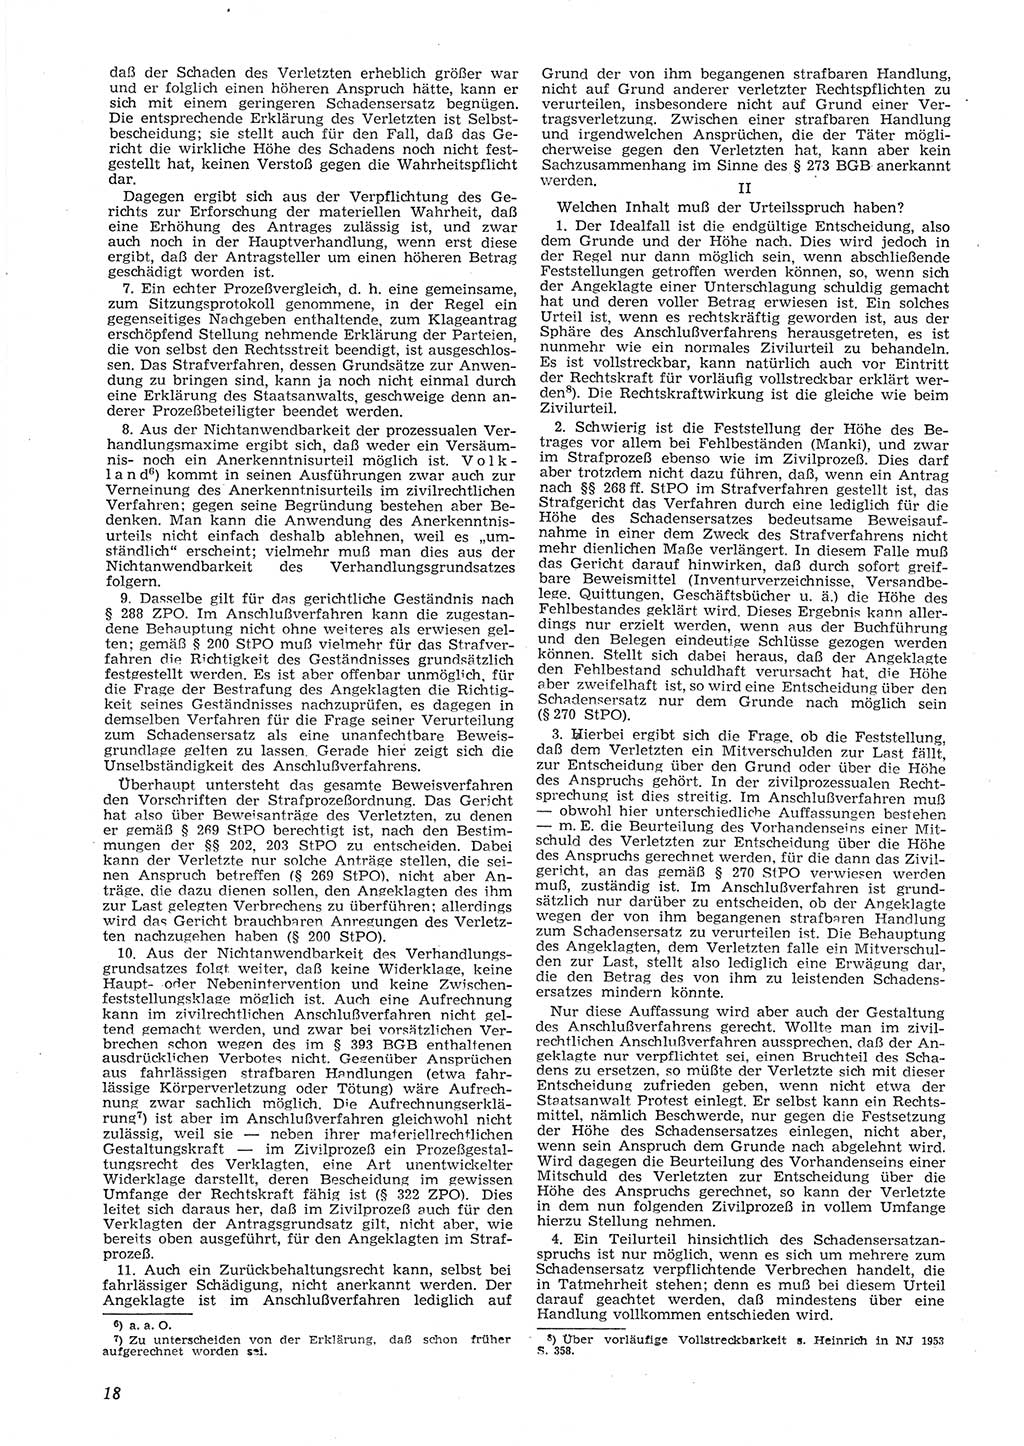 Neue Justiz (NJ), Zeitschrift für Recht und Rechtswissenschaft [Deutsche Demokratische Republik (DDR)], 8. Jahrgang 1954, Seite 18 (NJ DDR 1954, S. 18)